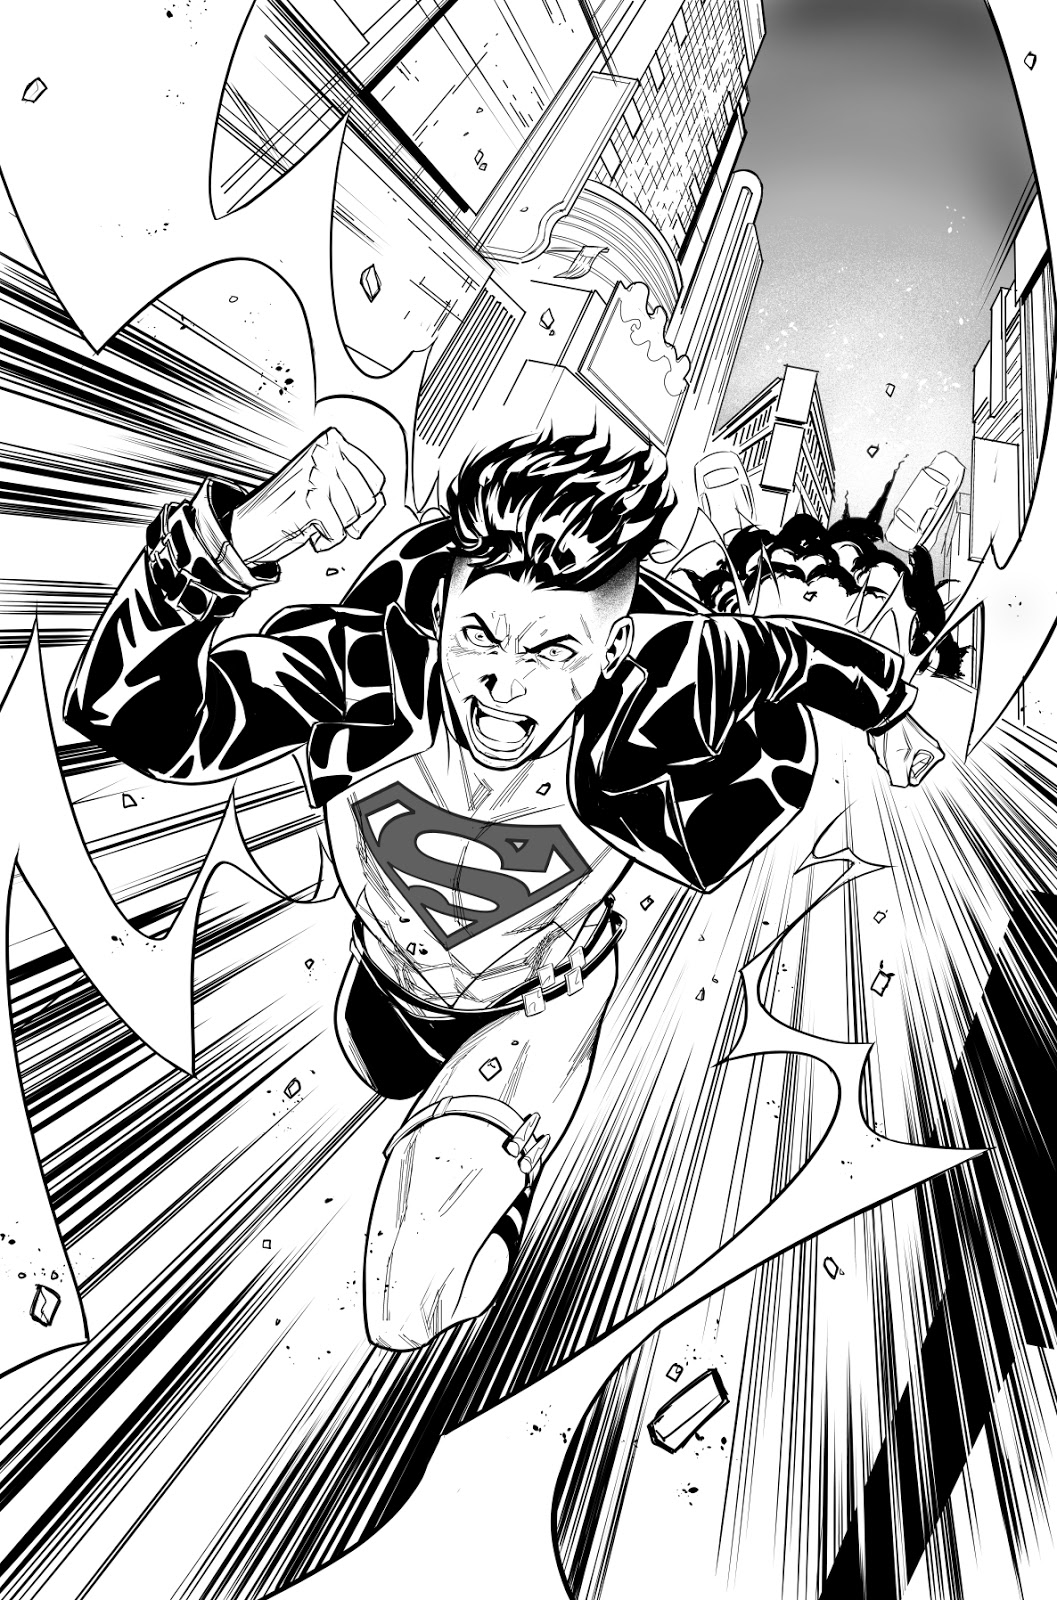 Juanan Ramírez: Superboy!